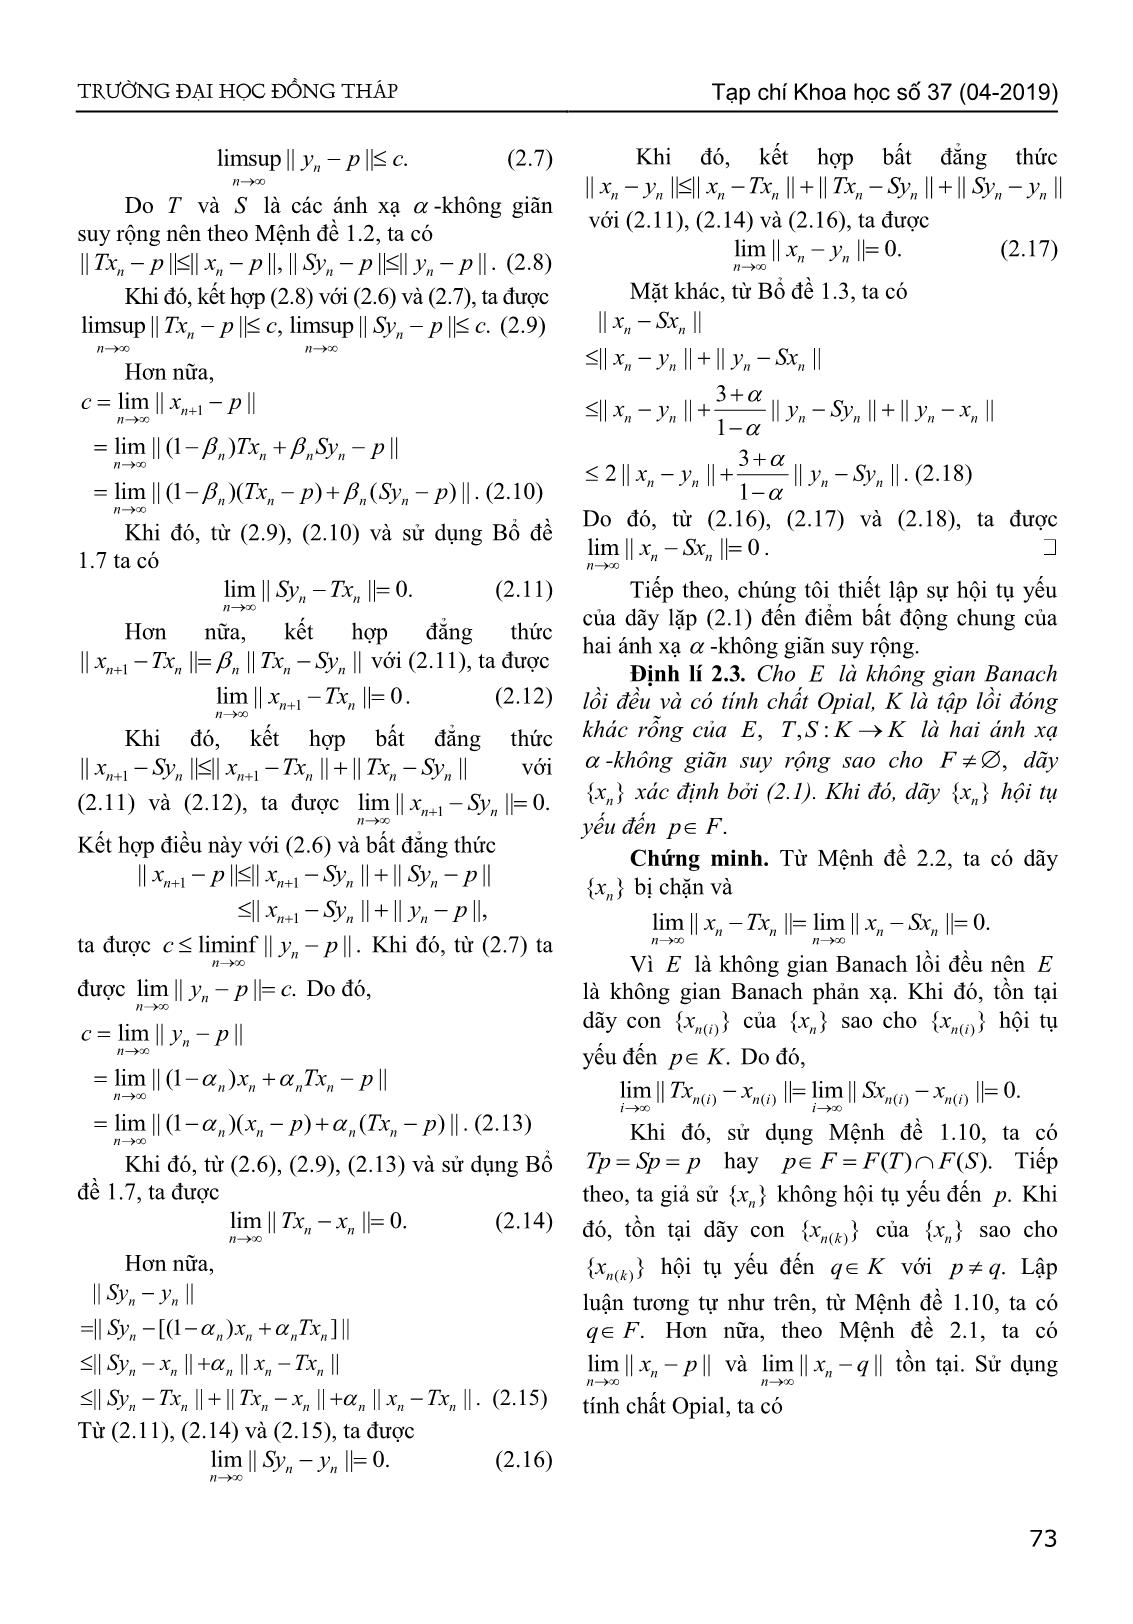 Sự hội tụ của dãy lặp kiểu Agarwal đến điểm bất động chung của hai ánh xạ - Không giãn suy rộng trong không gian Banach lồi đều trang 4